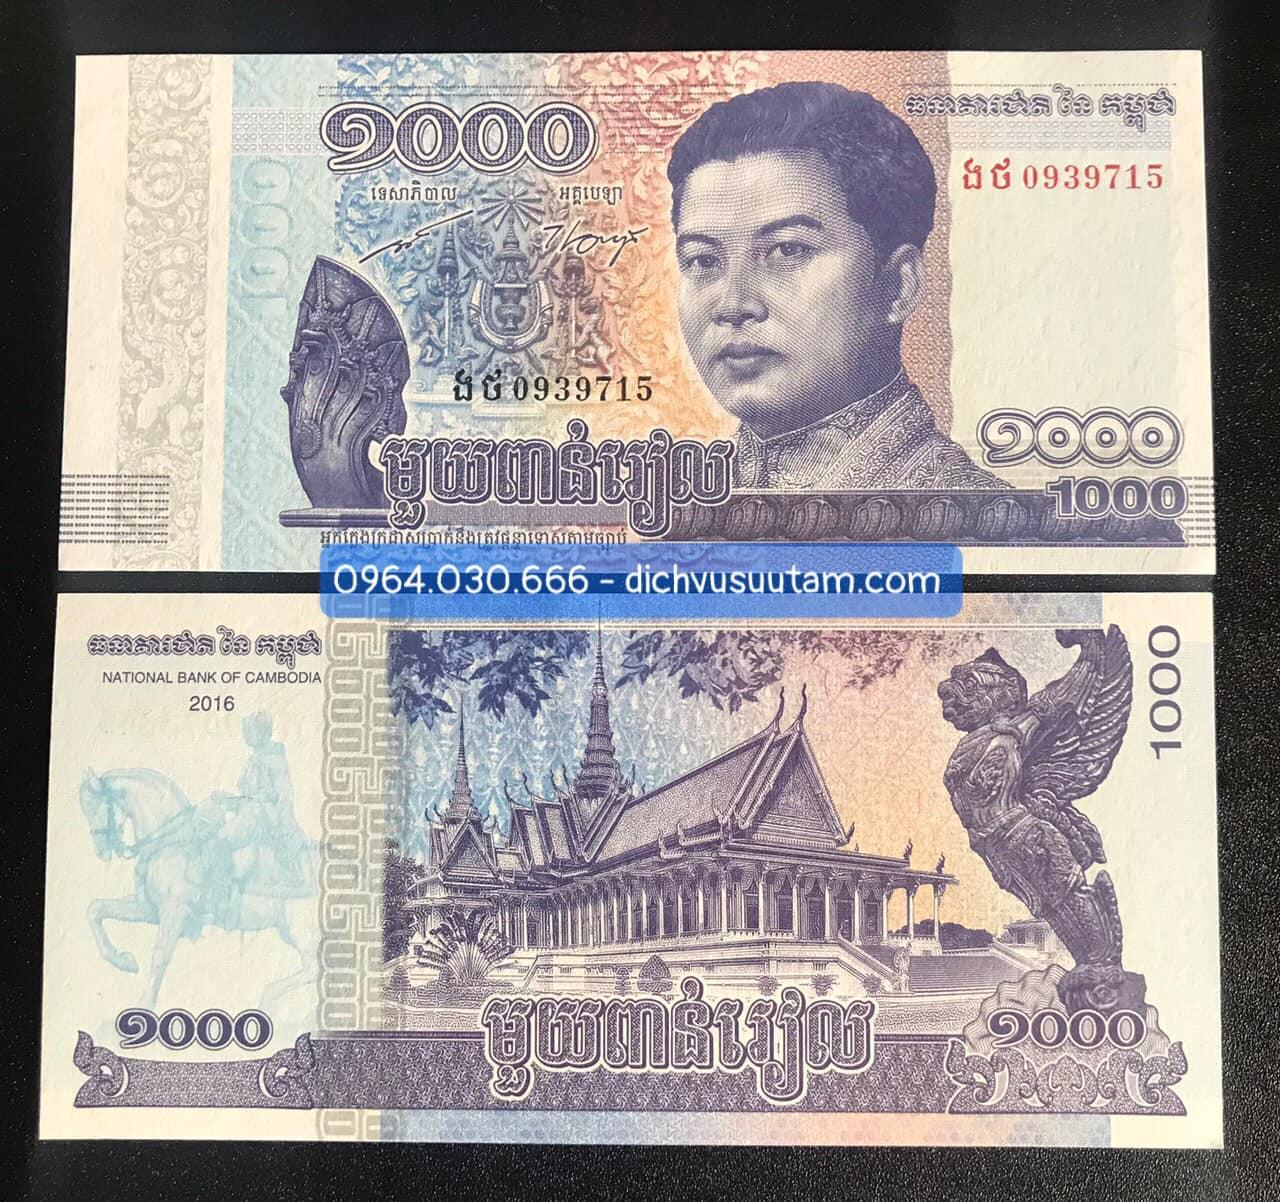 Tờ 1000 Riels Campuchia màu xanh, sưu tầm